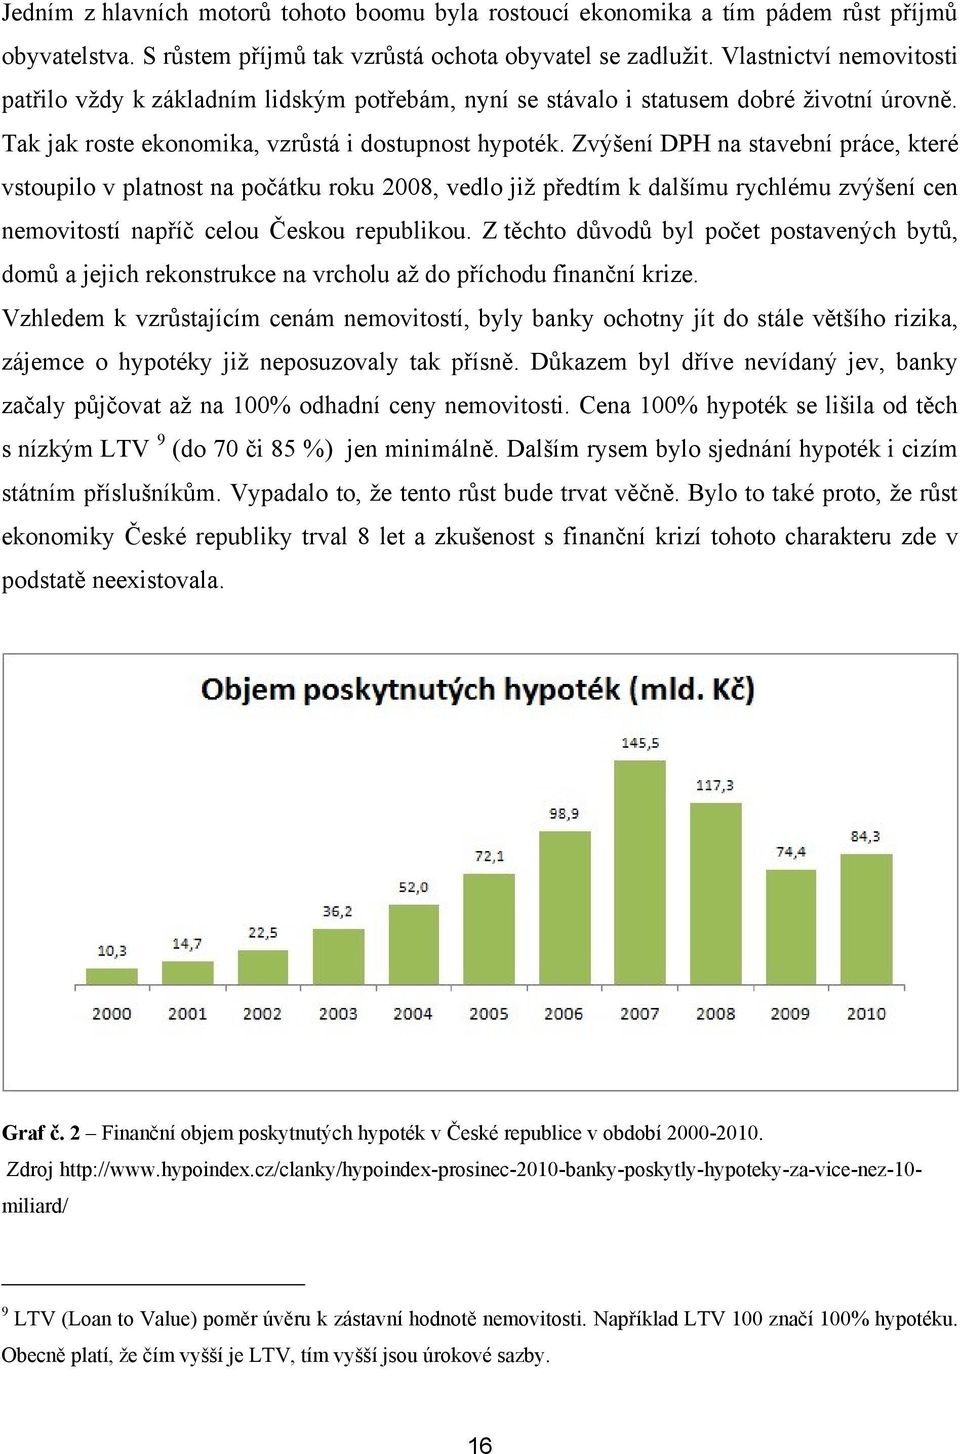 Zvýšení DPH na stavební práce, které vstoupilo v platnost na počátku roku 2008, vedlo jiţ předtím k dalšímu rychlému zvýšení cen nemovitostí napříč celou Českou republikou.